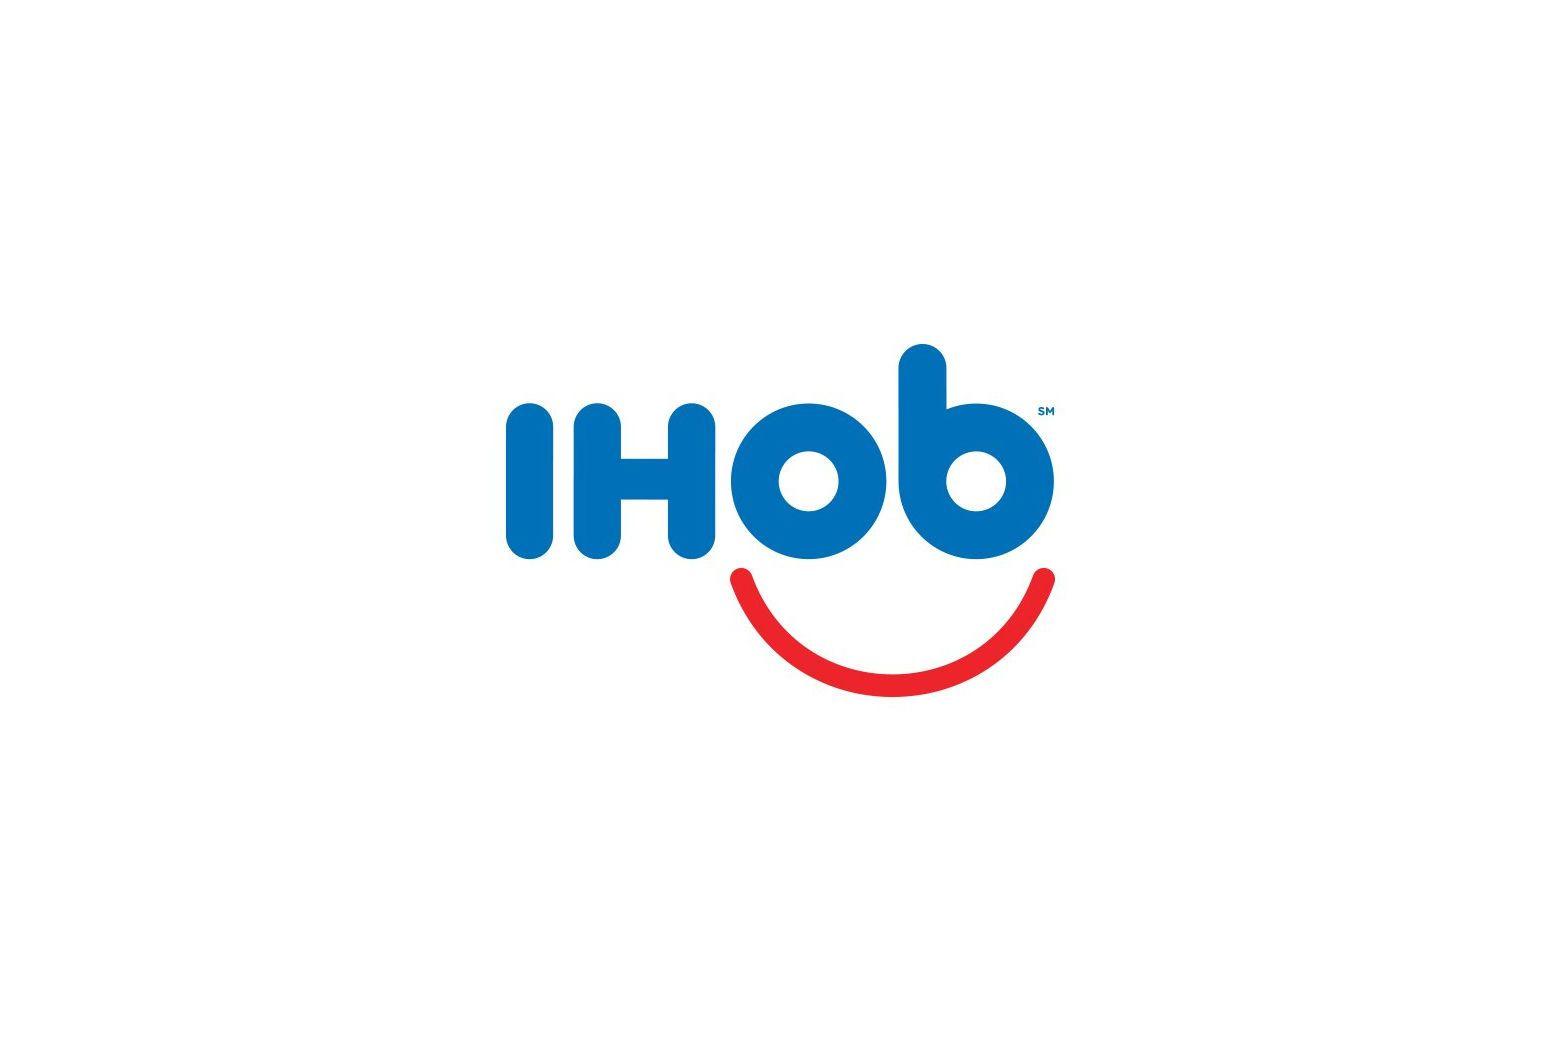 Ihob Logo - IHOP flips over burgers, changes 'p' to 'b' in logo